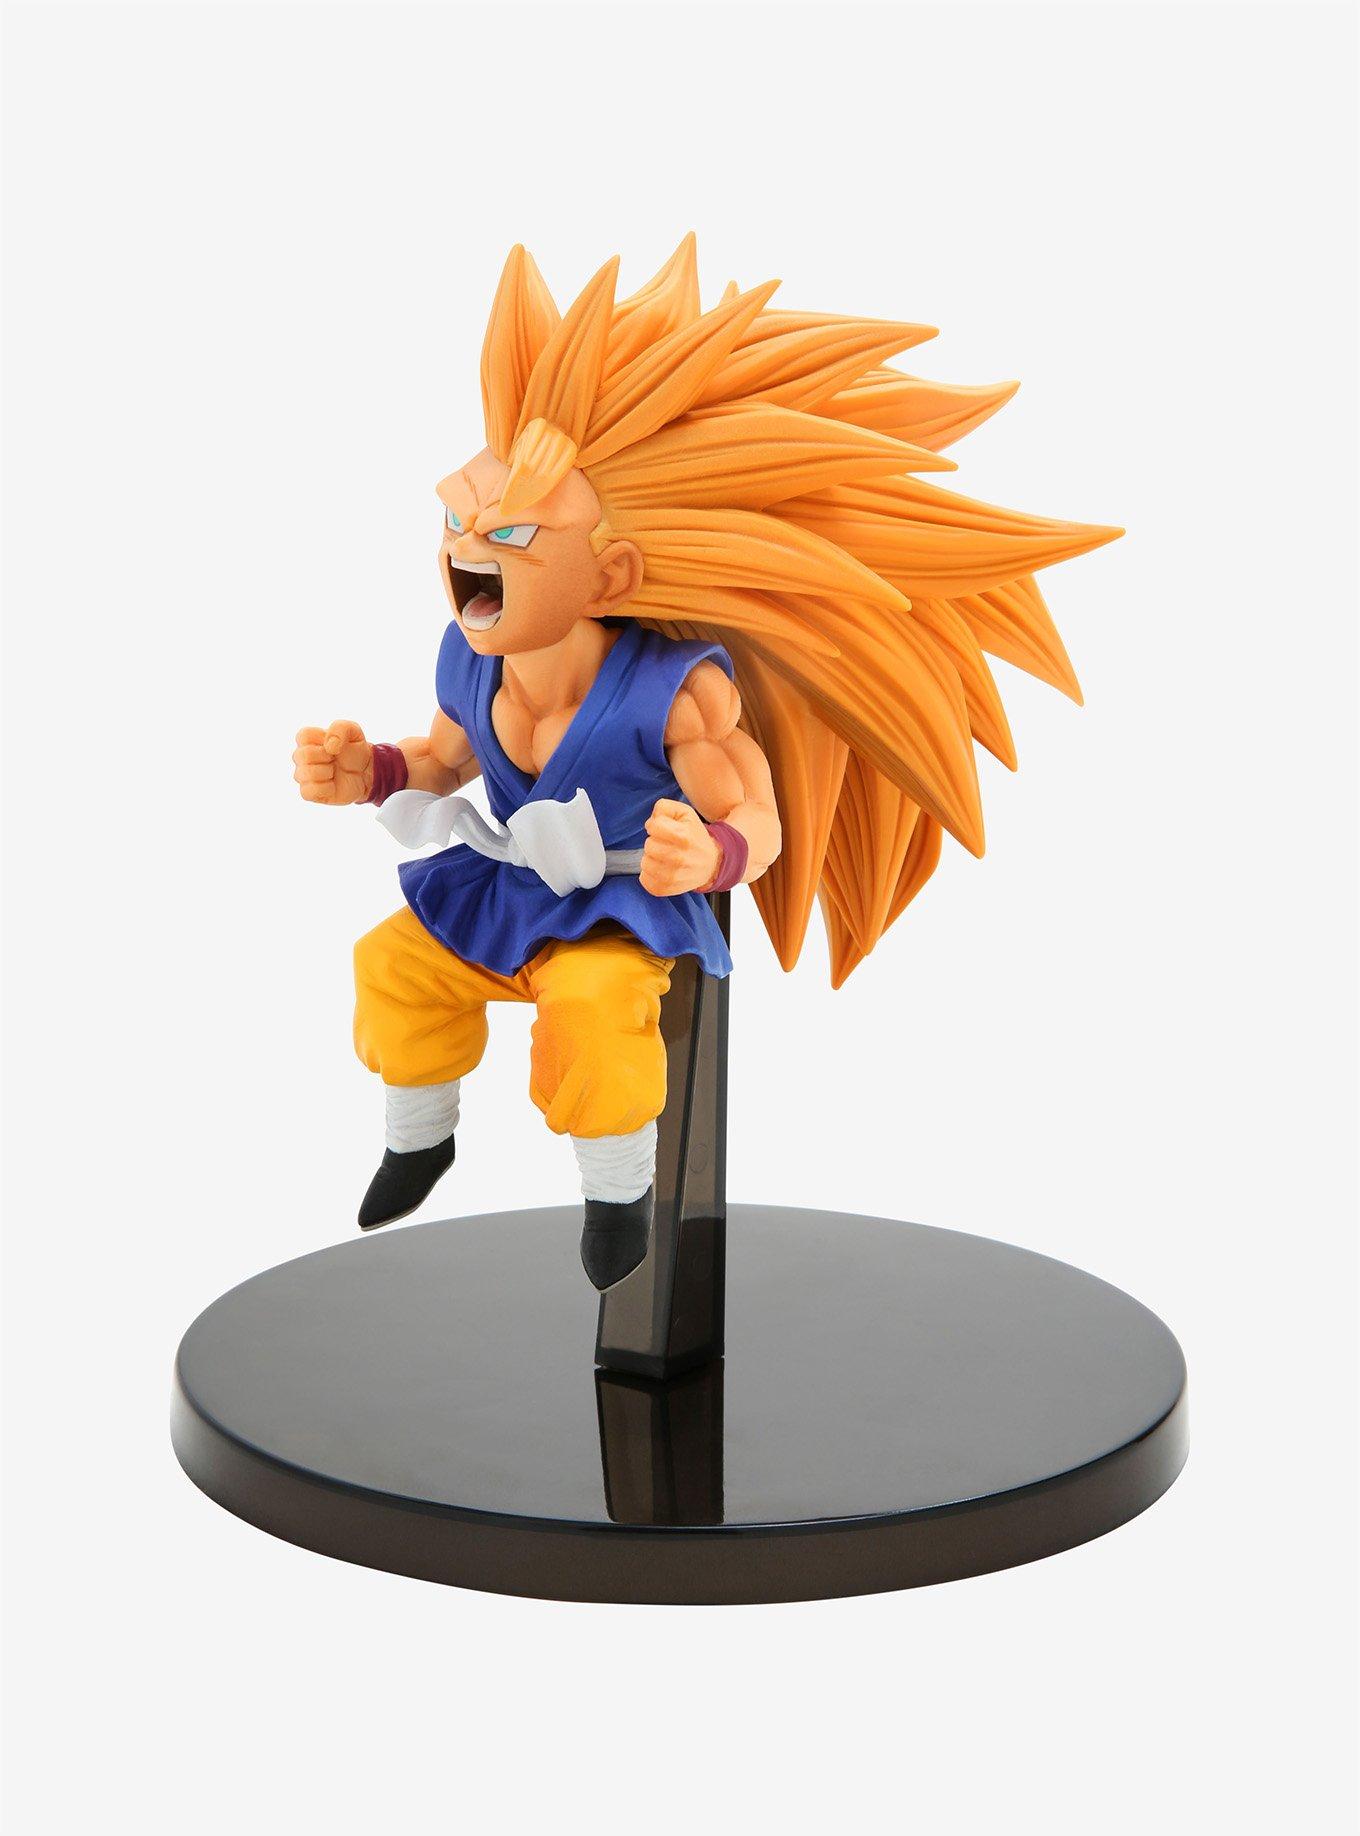 Turles Saiyan Action Figure Toy Model Goku Father Dragon Ball Figurine PVC  Doll